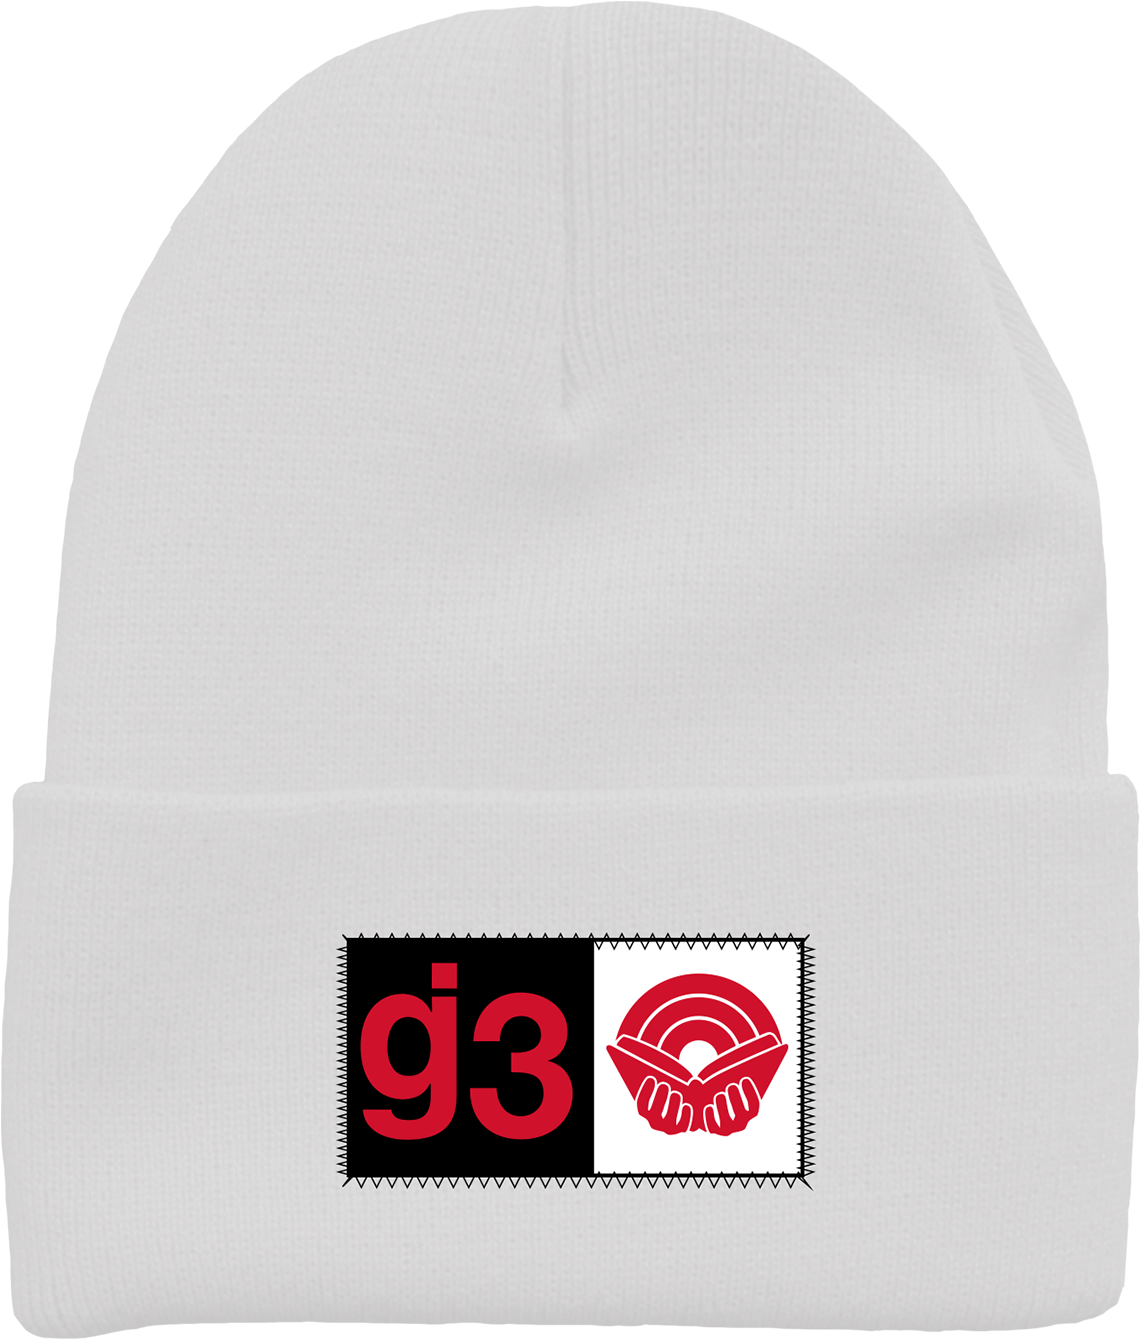 Cb G3 White Beanie $30 - Beanie (1600x1600), Png Download